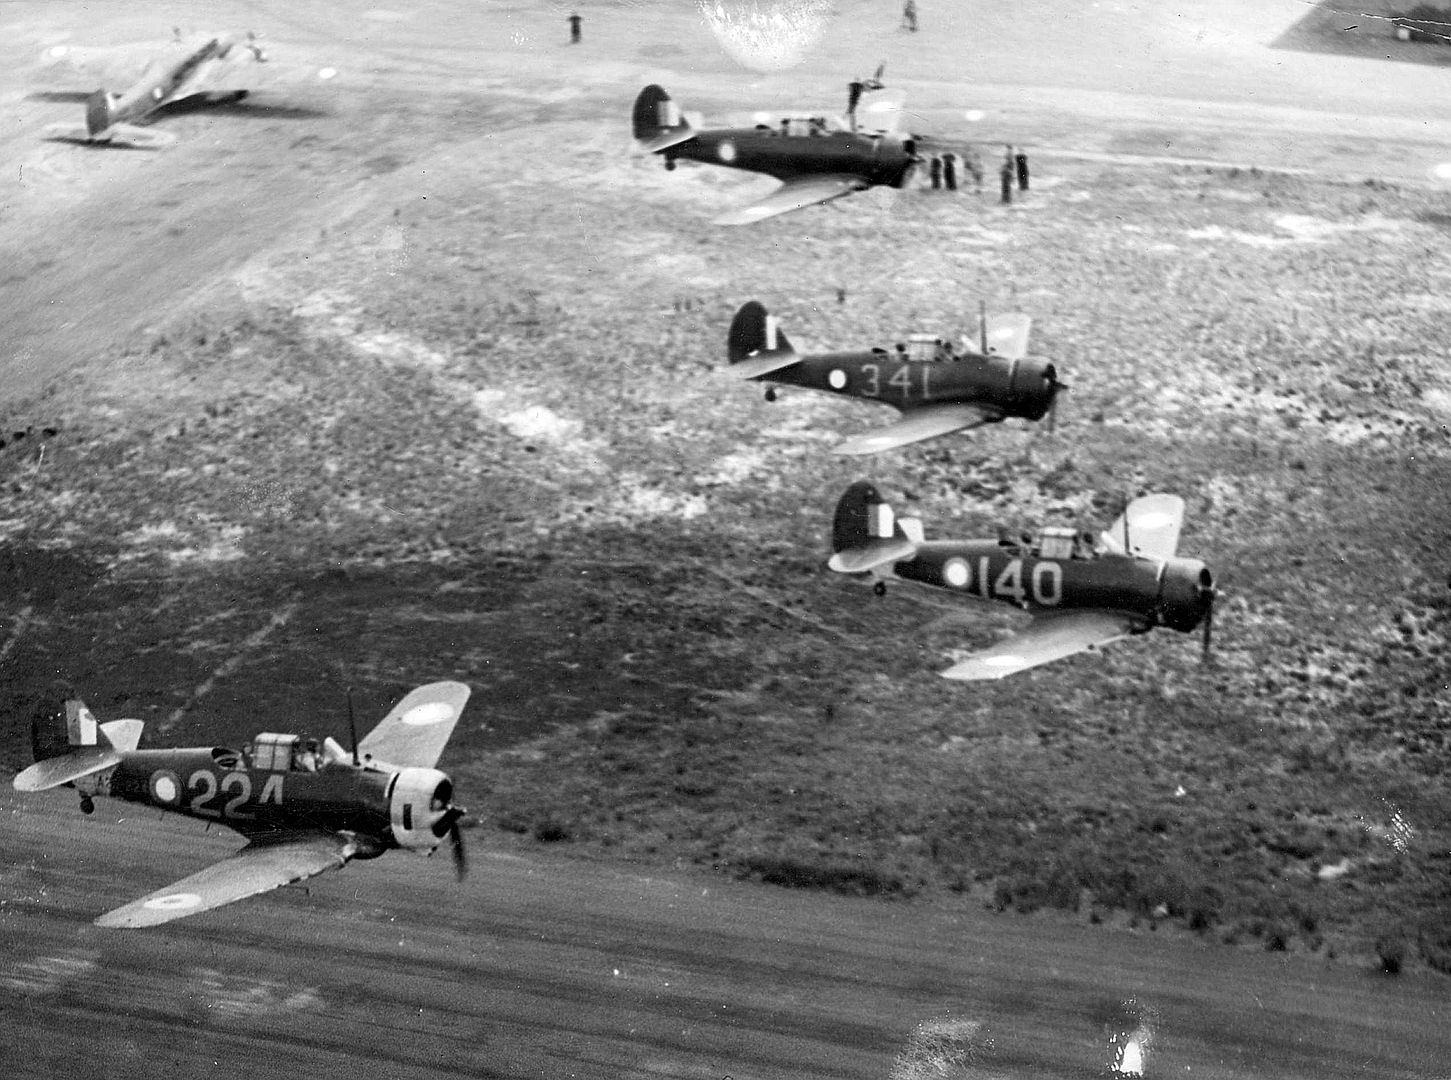 Wirraway Aircraft 1943